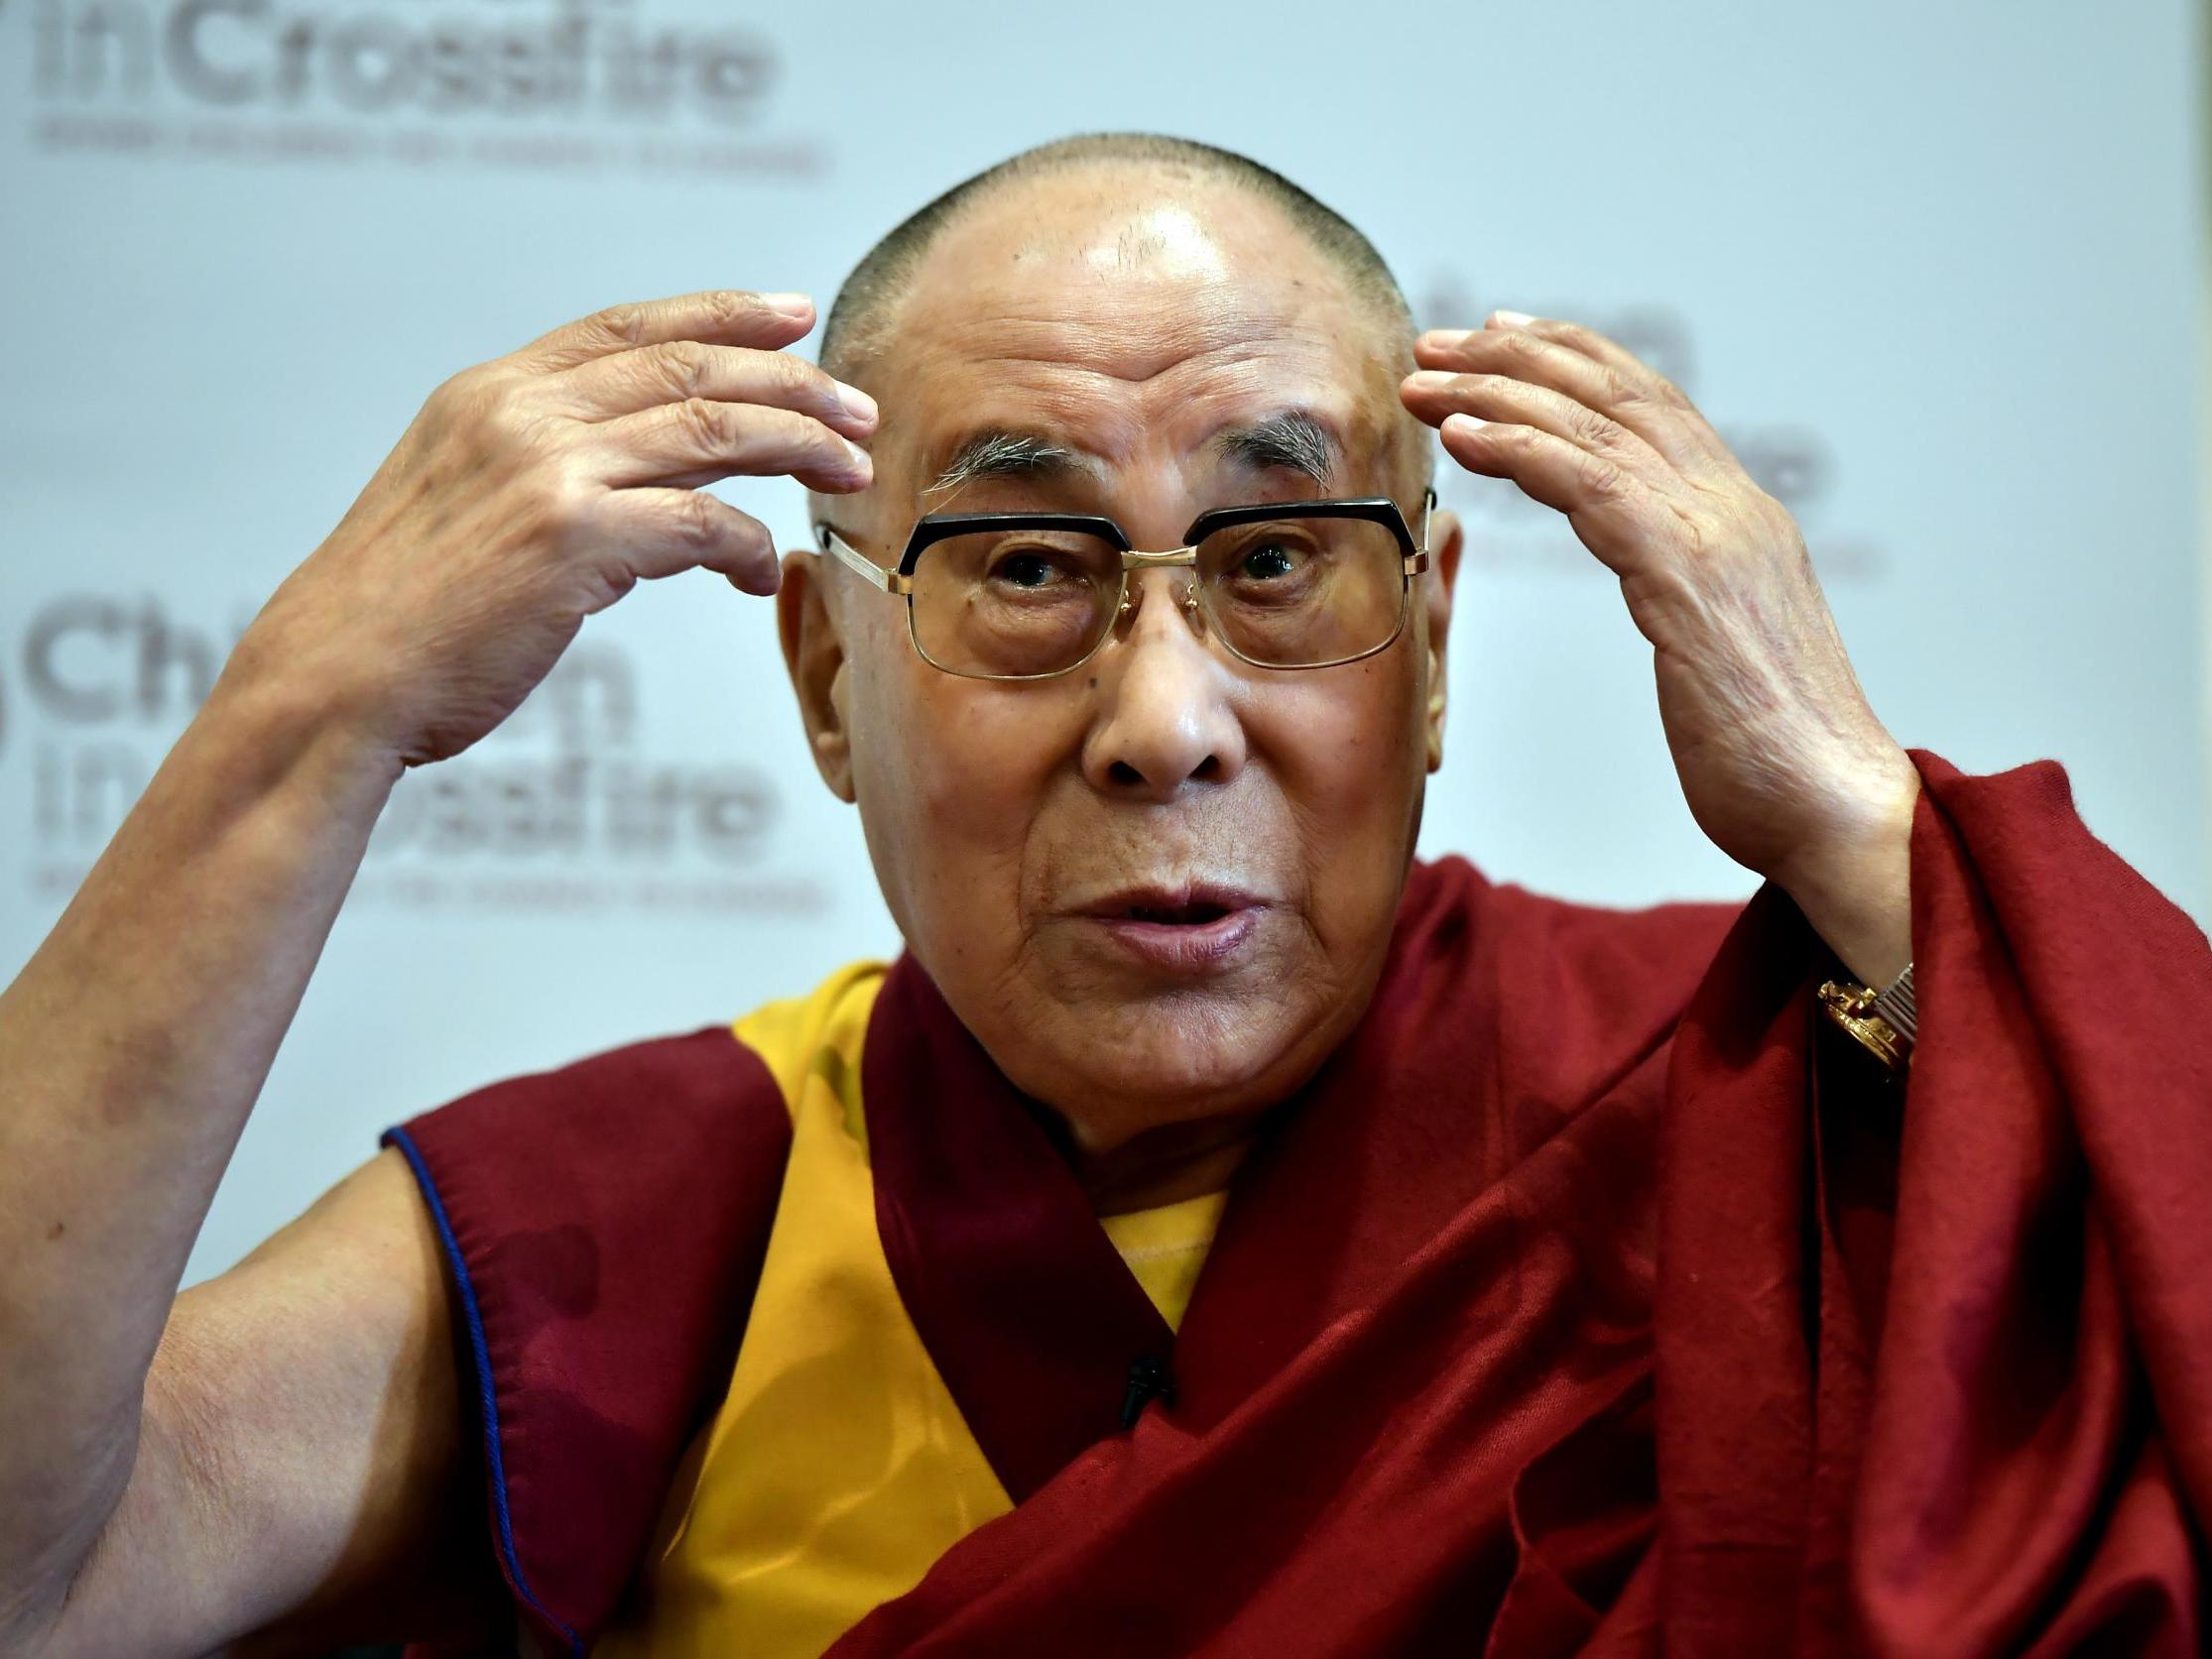 The pocket dalai lama